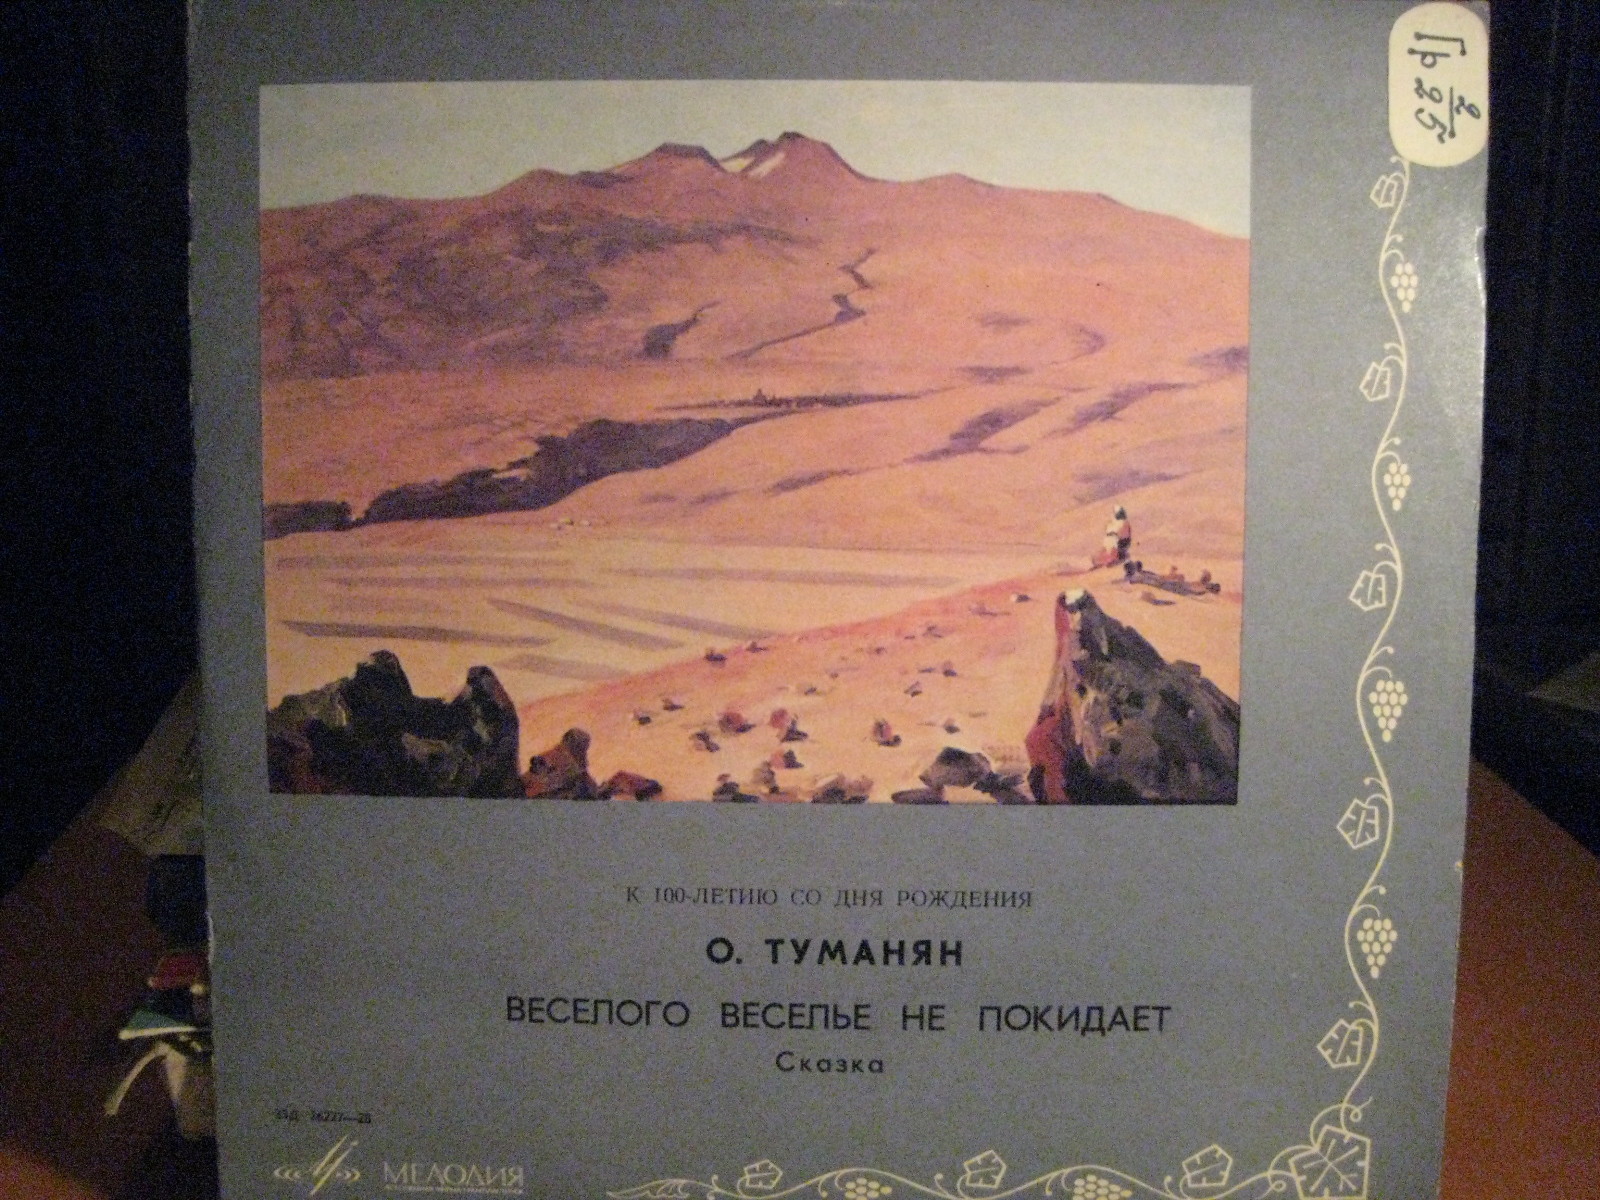 О. Туманян (1869 - 1923). Веселого веселье не покидает, сказка